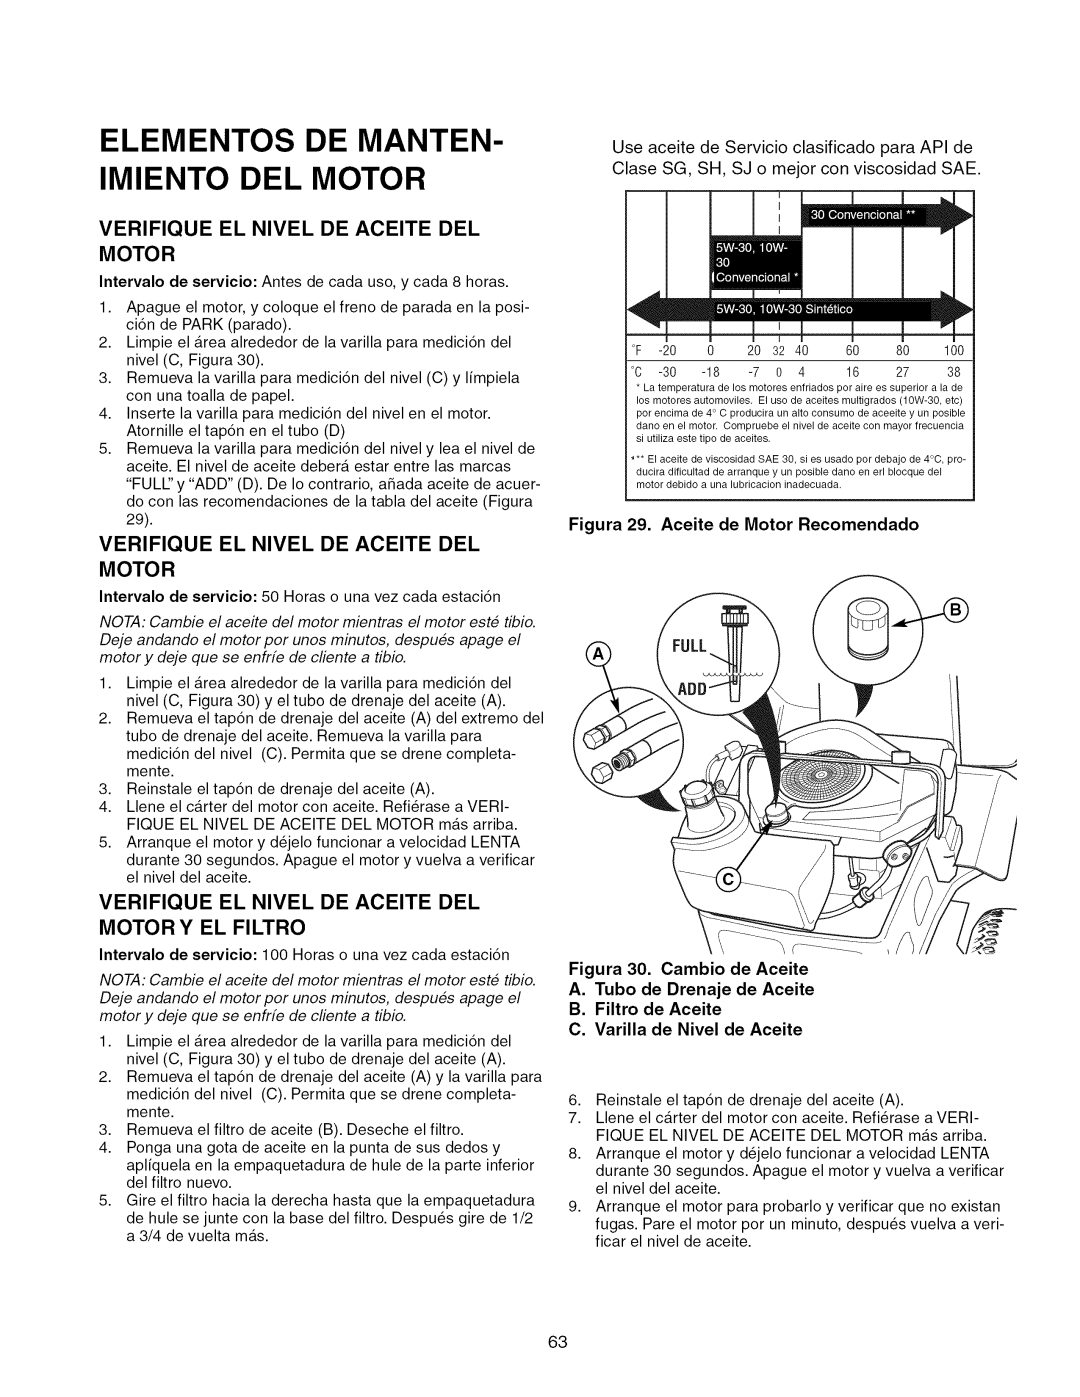 Craftsman ZTS 6000, 107.289860 manual Elementos De Manten- Imiento Del Motor, Verifique El Nivel De Aceite Del Motor 